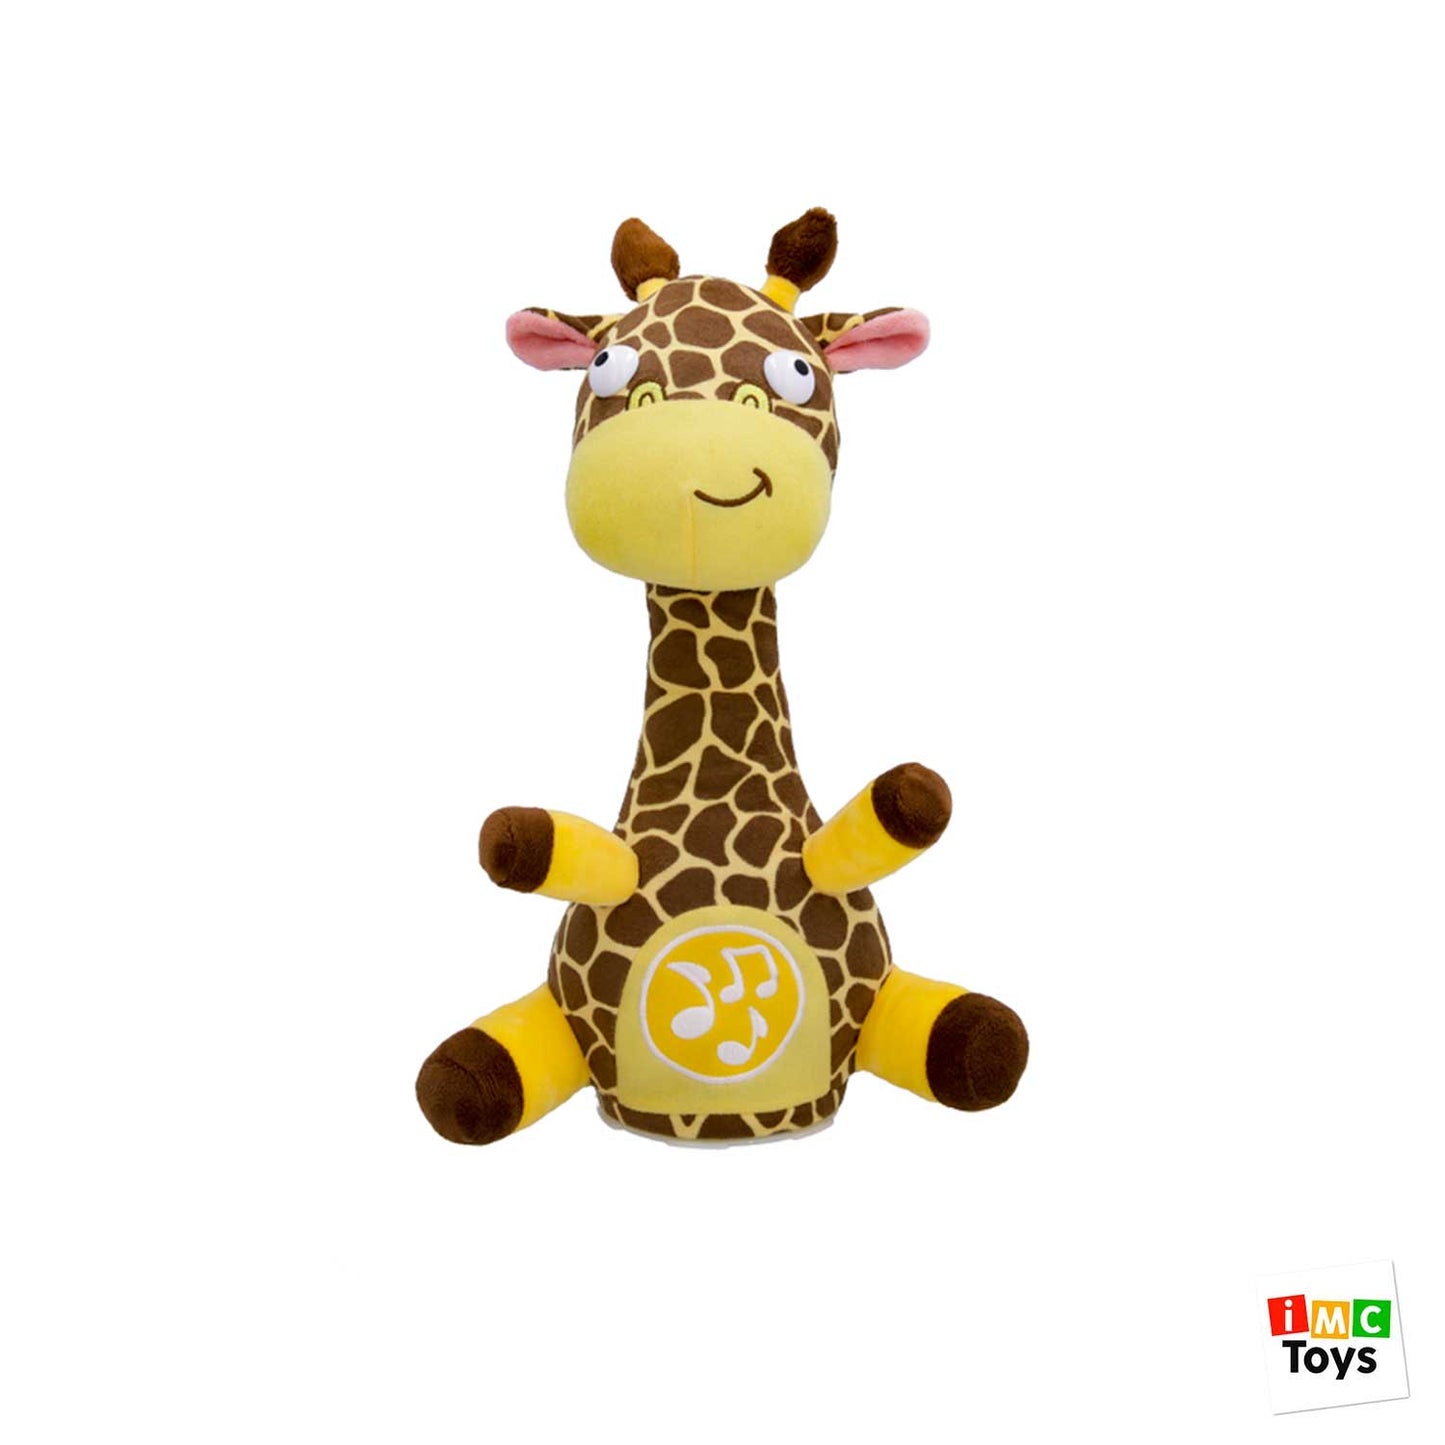 IMC Toys - Peluche interattivo Club Petz Georgina la Giraffa